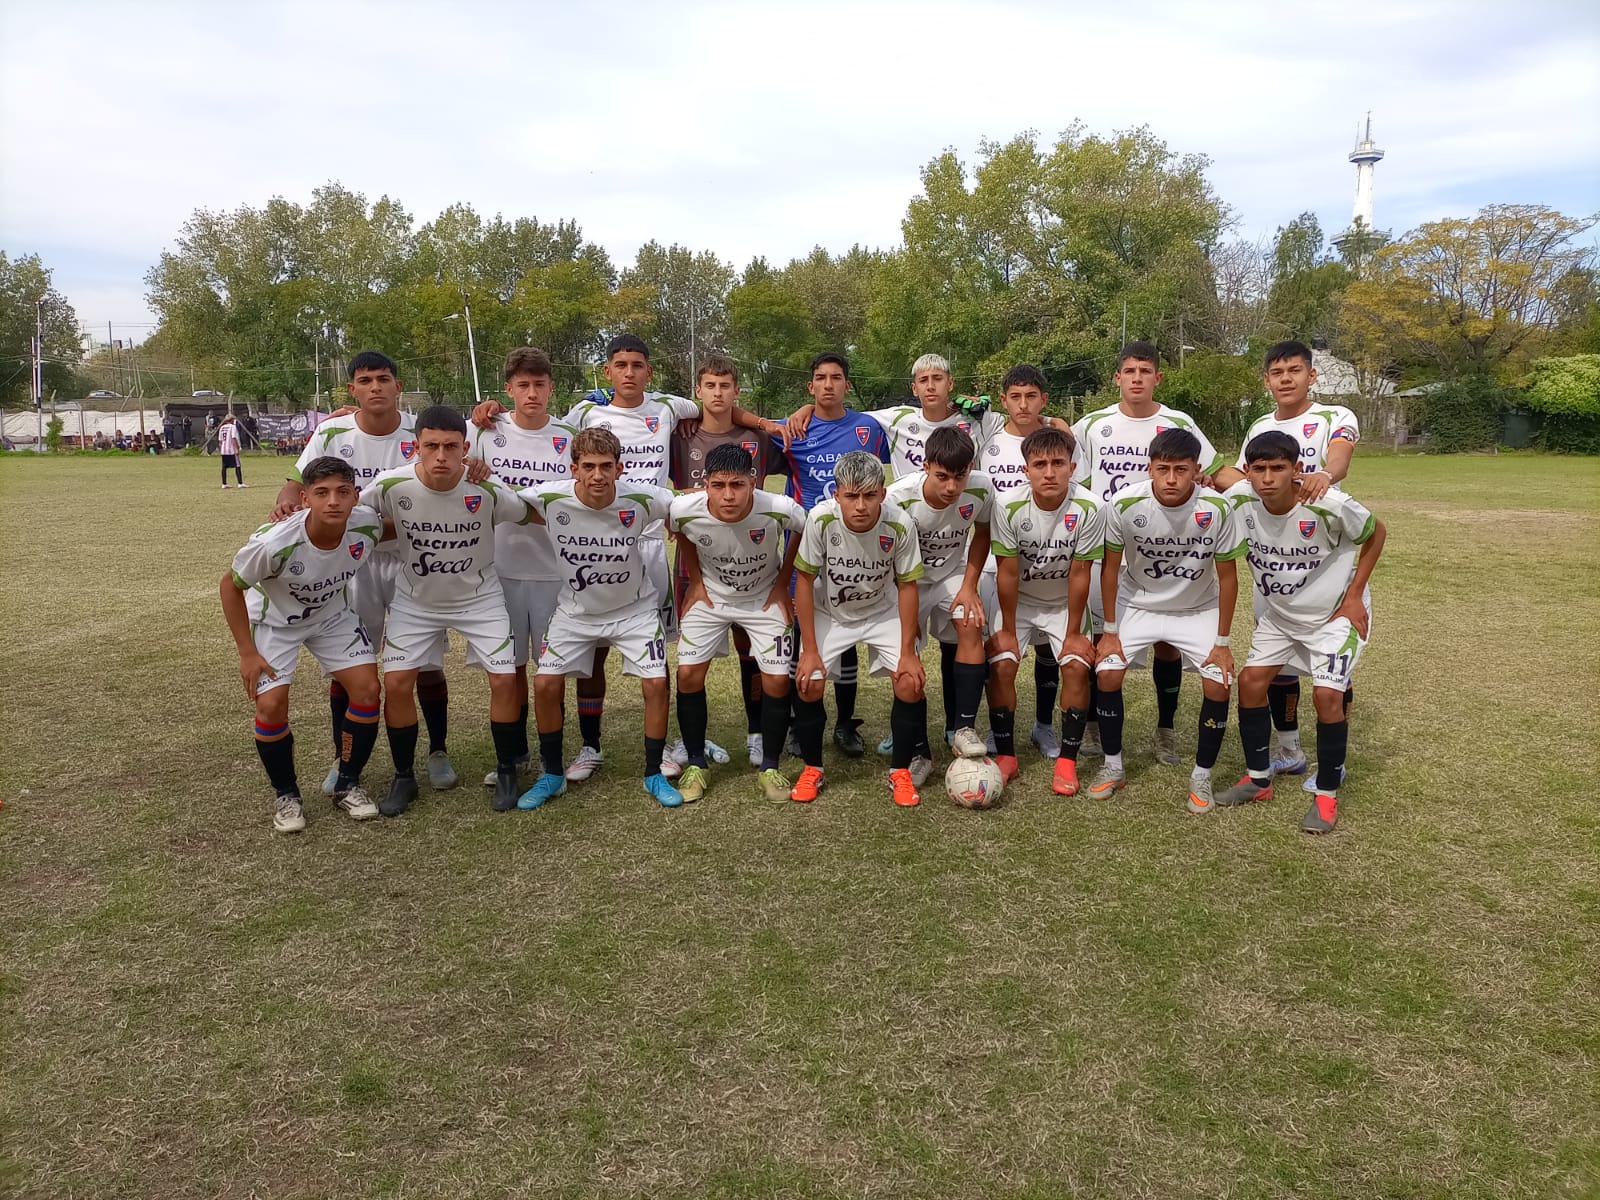 UAI Urquiza 1-0 Deportivo Armenio, Primera División B